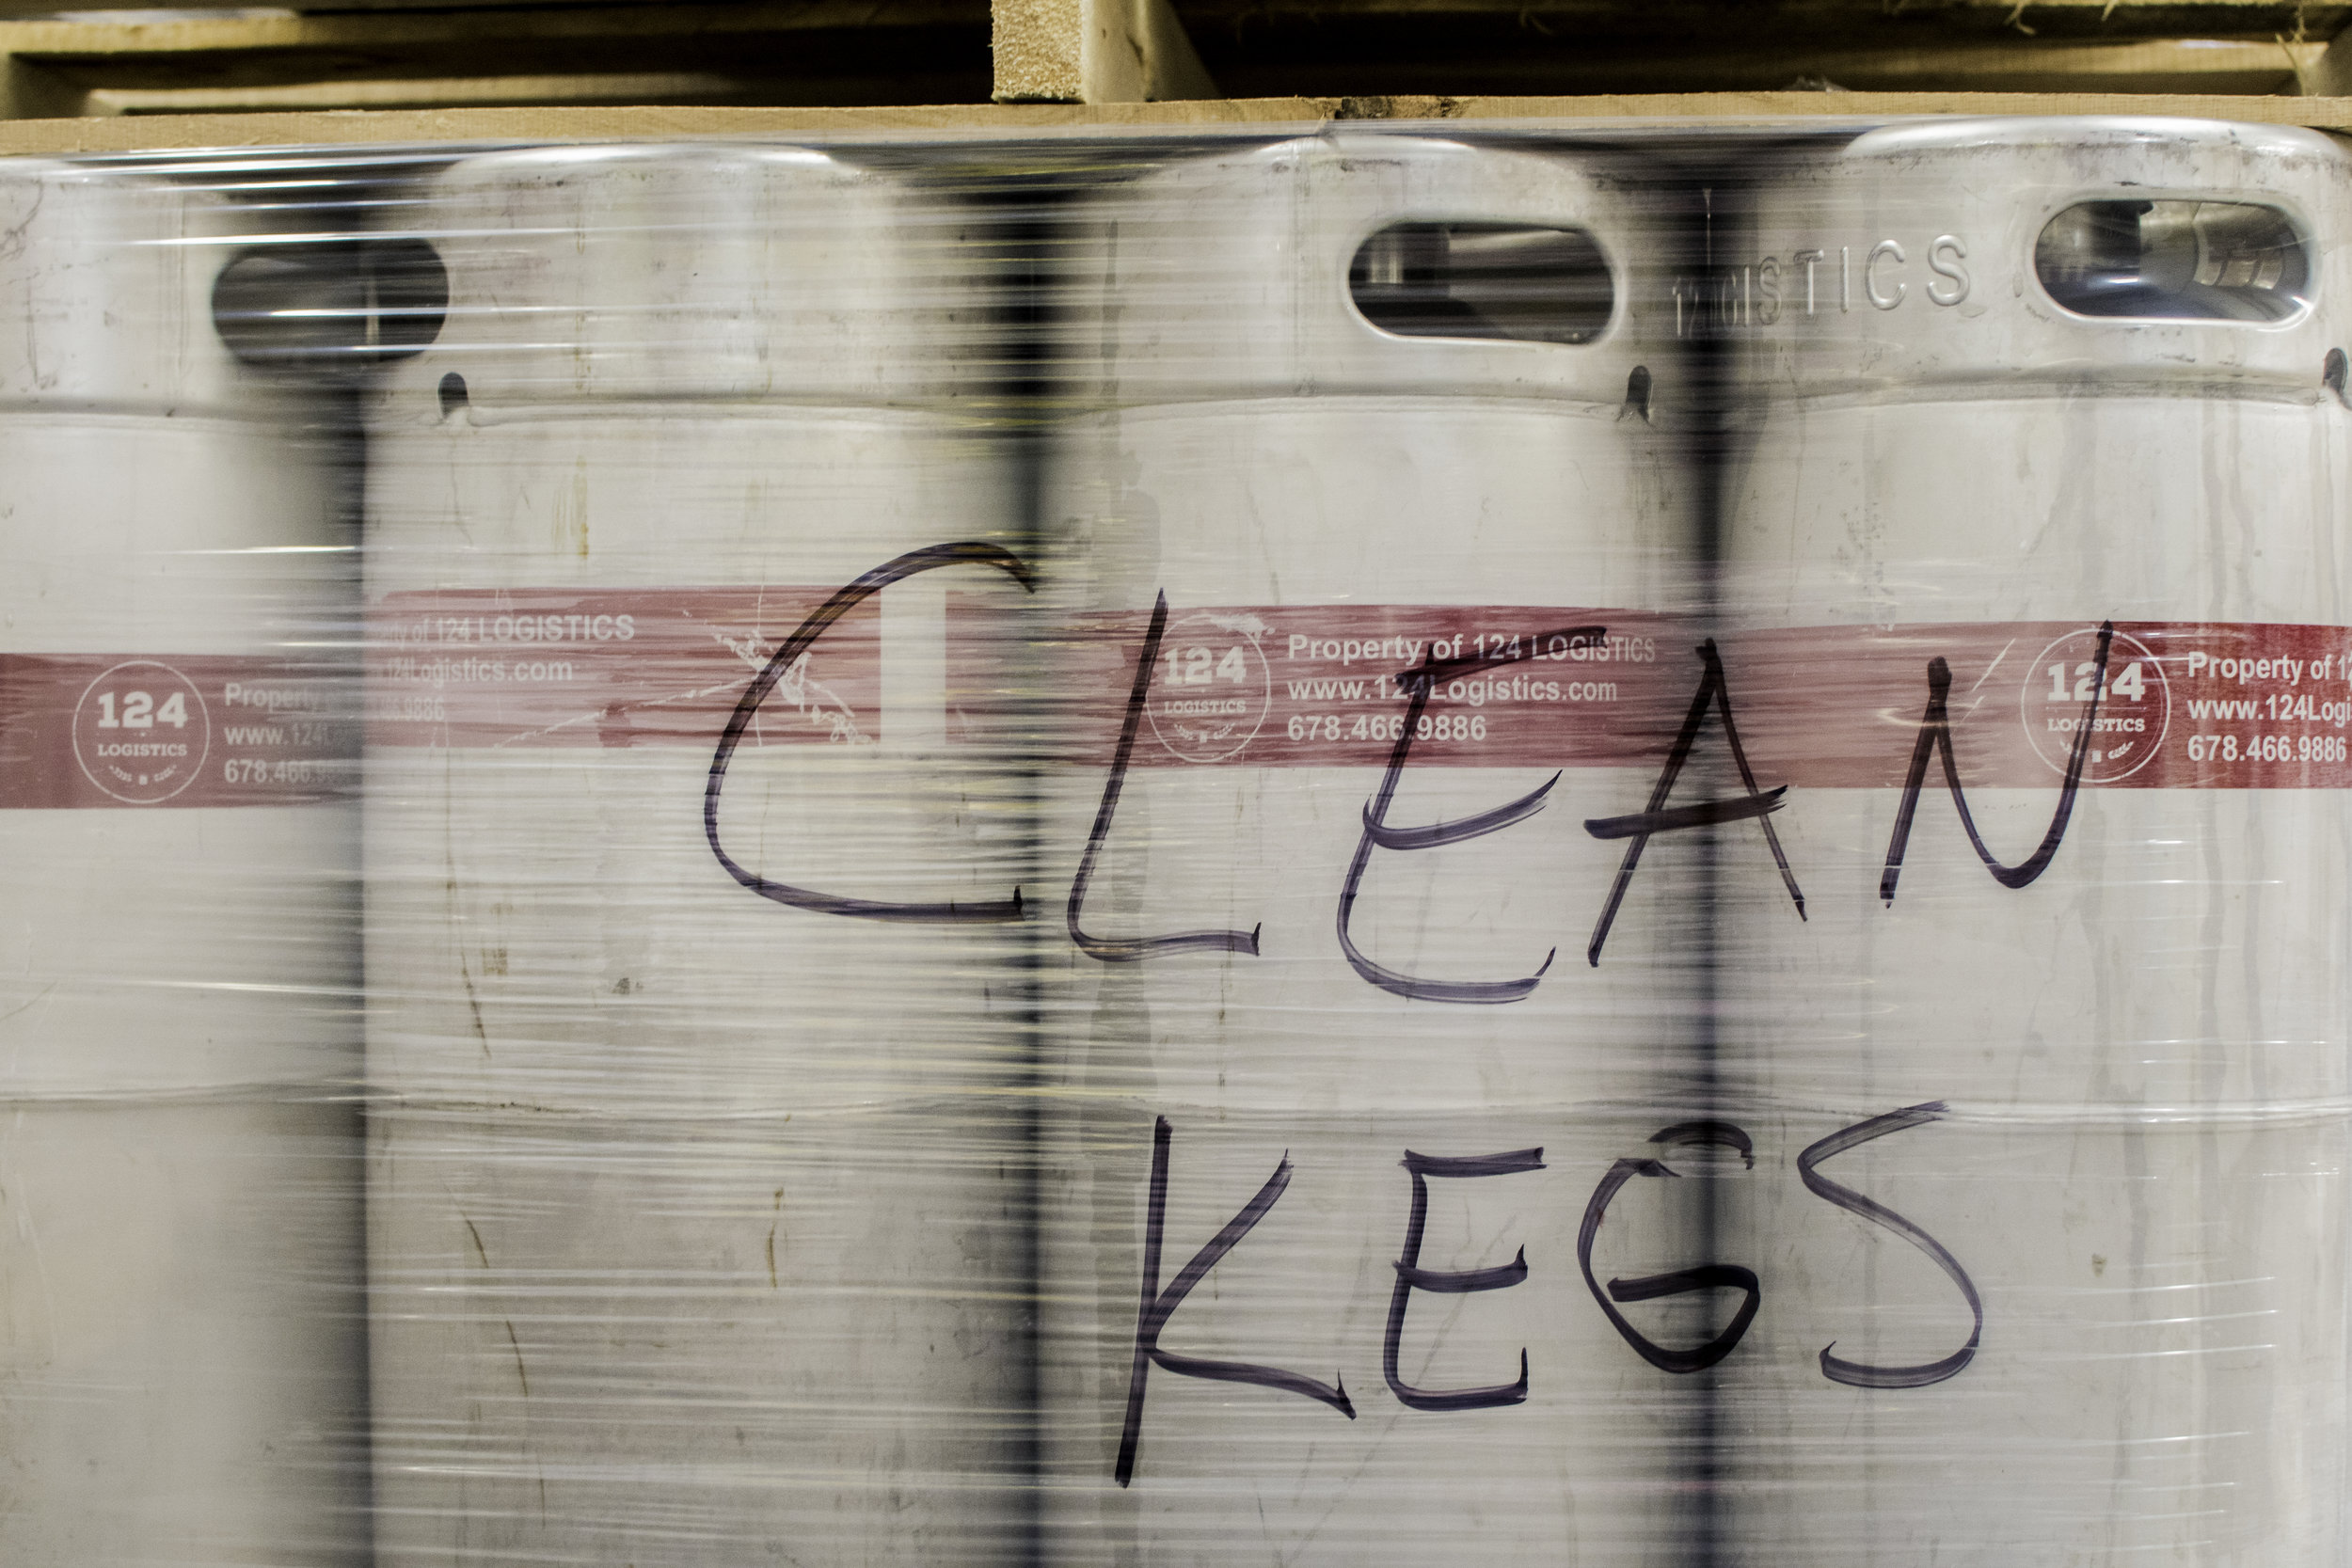 clean kegs.jpg